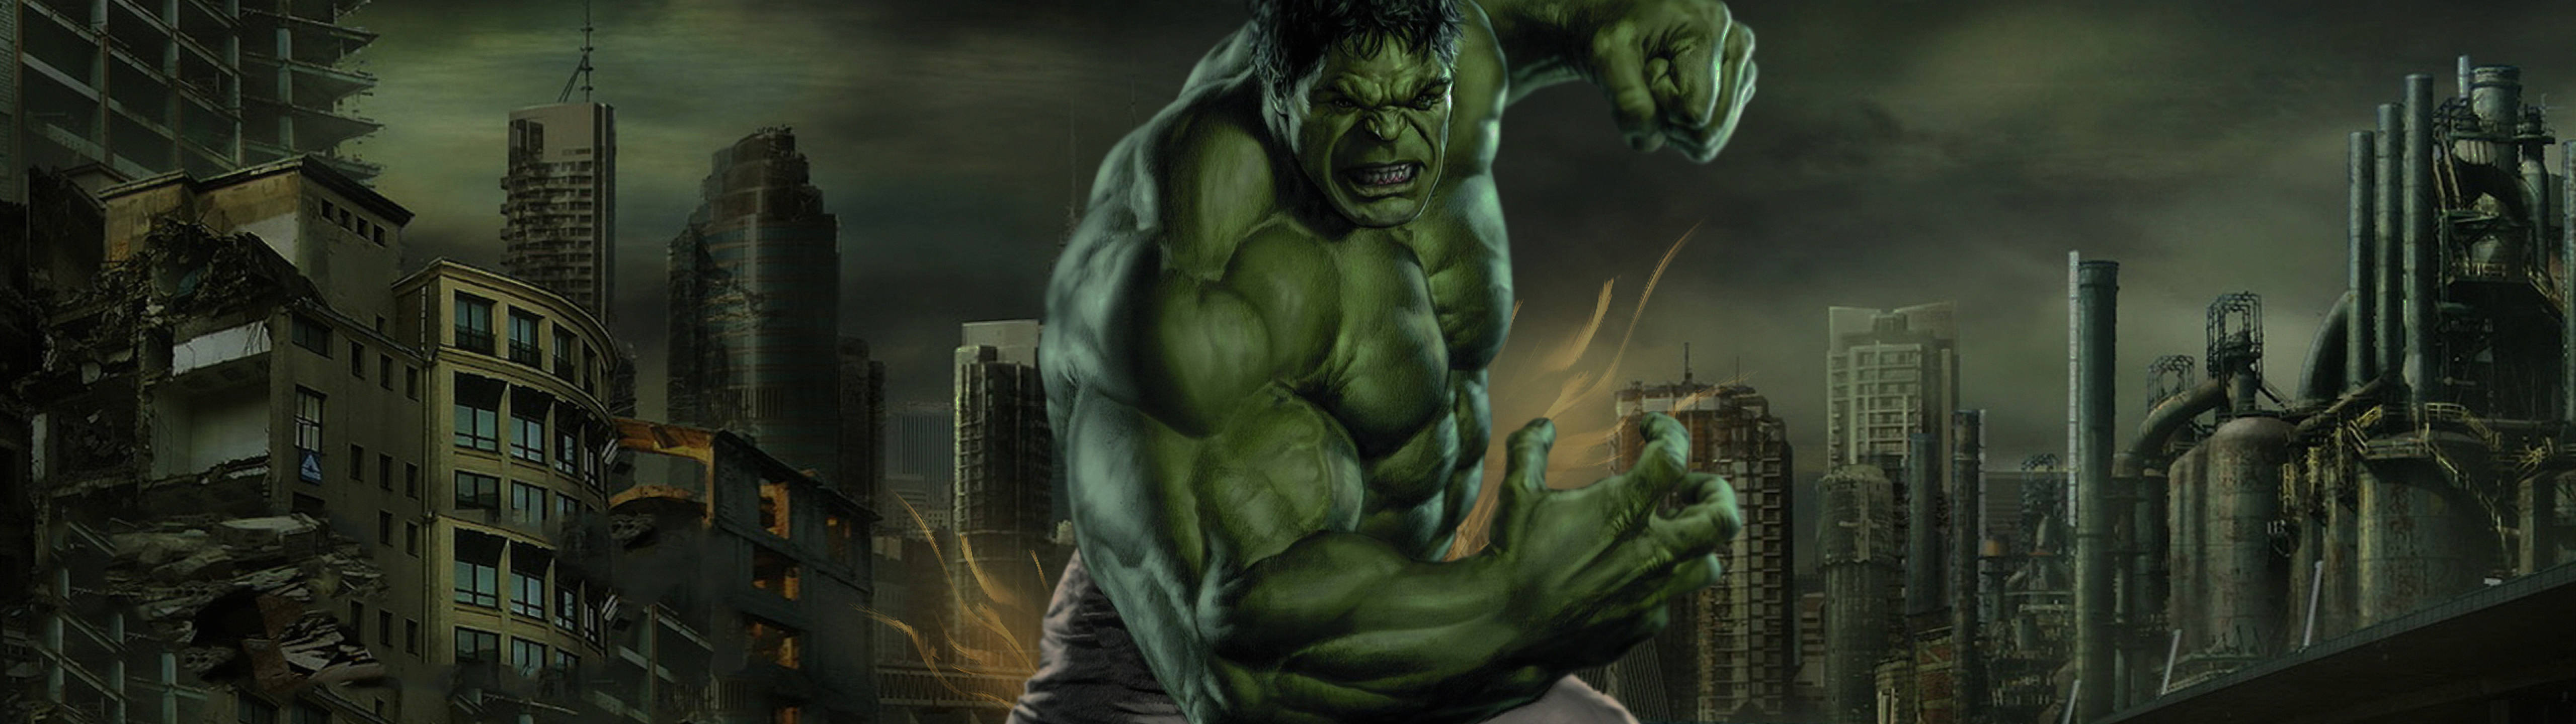 Marvel's Hulk 5120 X 1440 Background